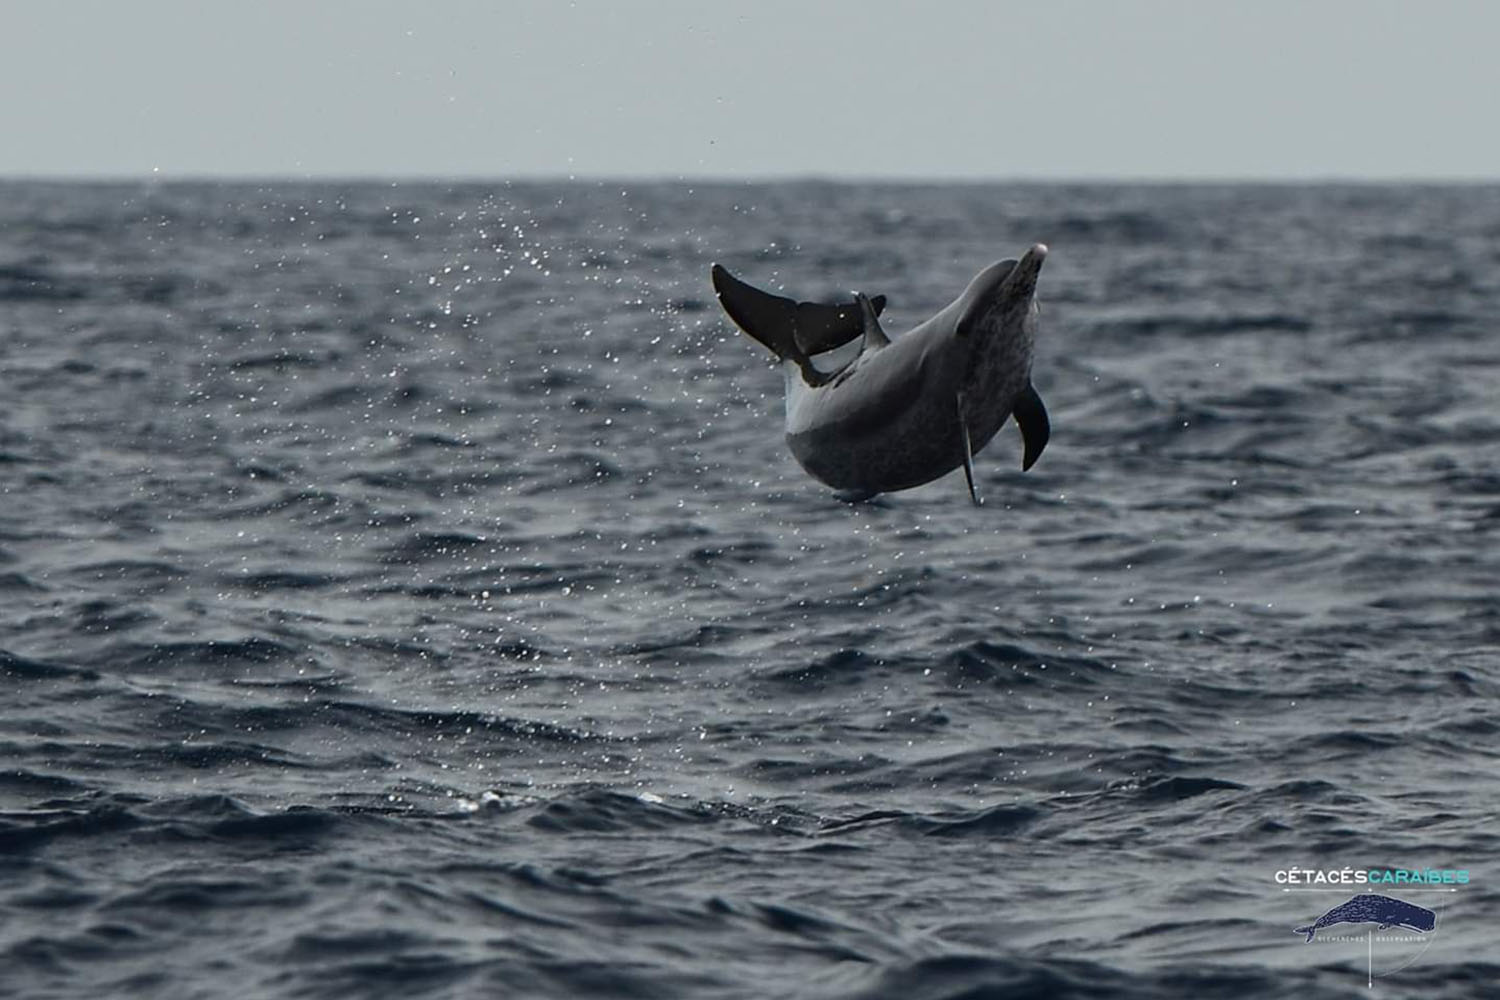 Cétacés et faune marine de Guadeloupe, voyage scientifique. Dauphin tacheté © Cédric Millon